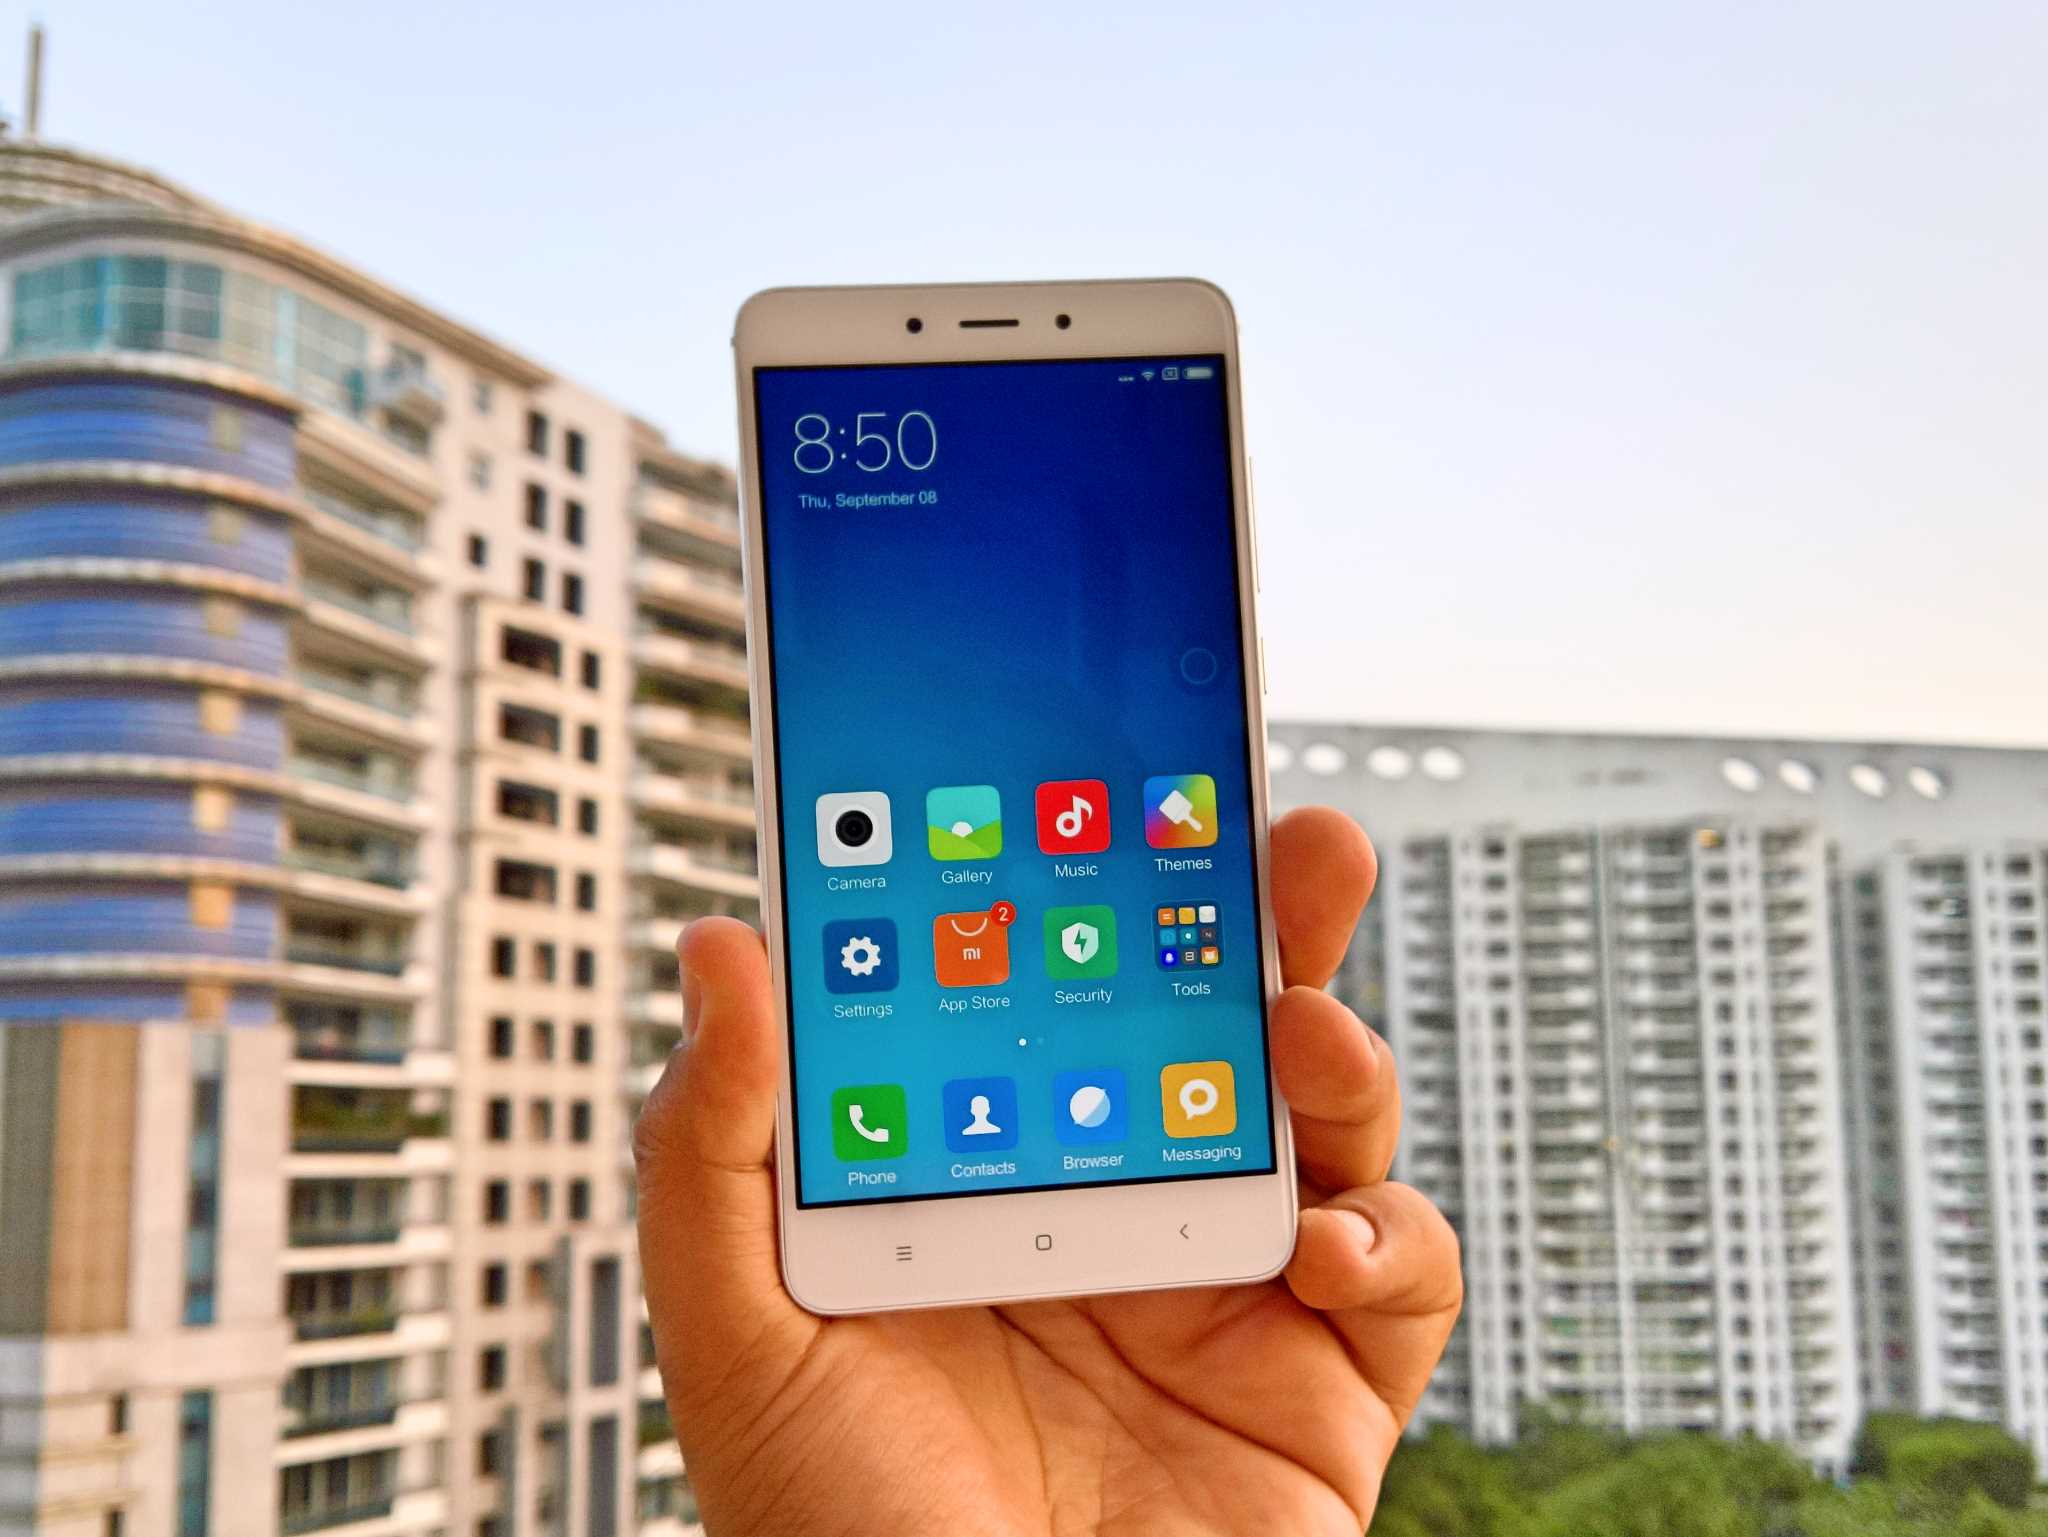 Xiaomi Redmi Note 4 3 16